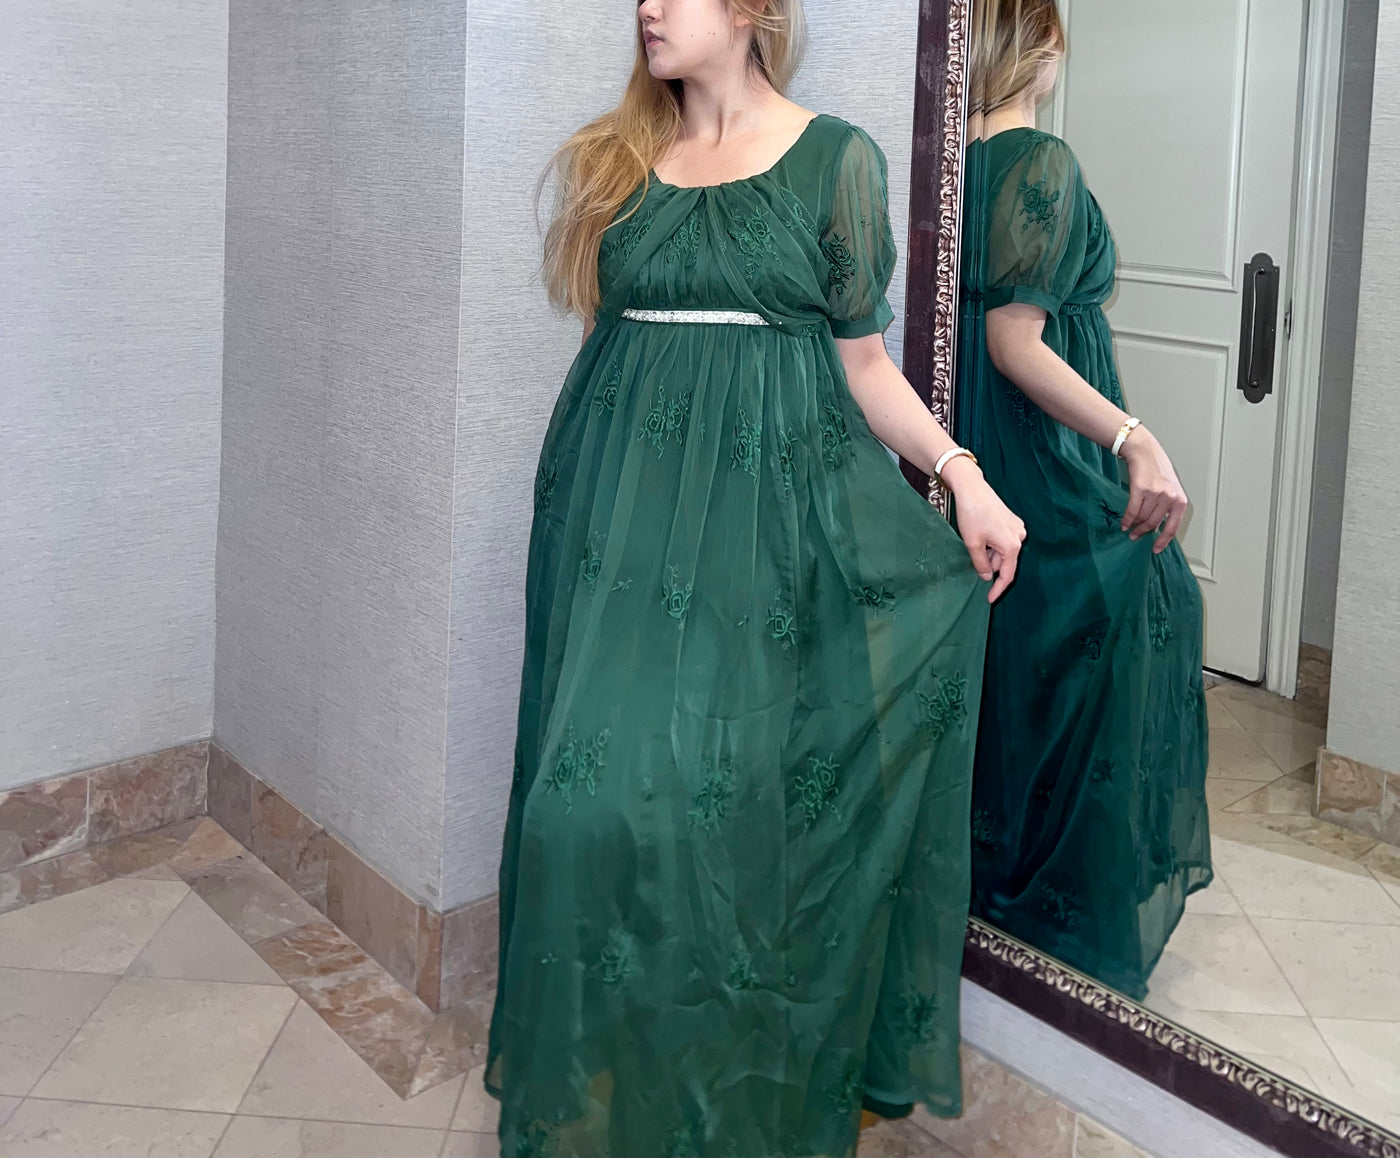 Emerald Embroidery Bridgerton Green Regency Era Ball Gown -Empire Waist Dress - Plus Size